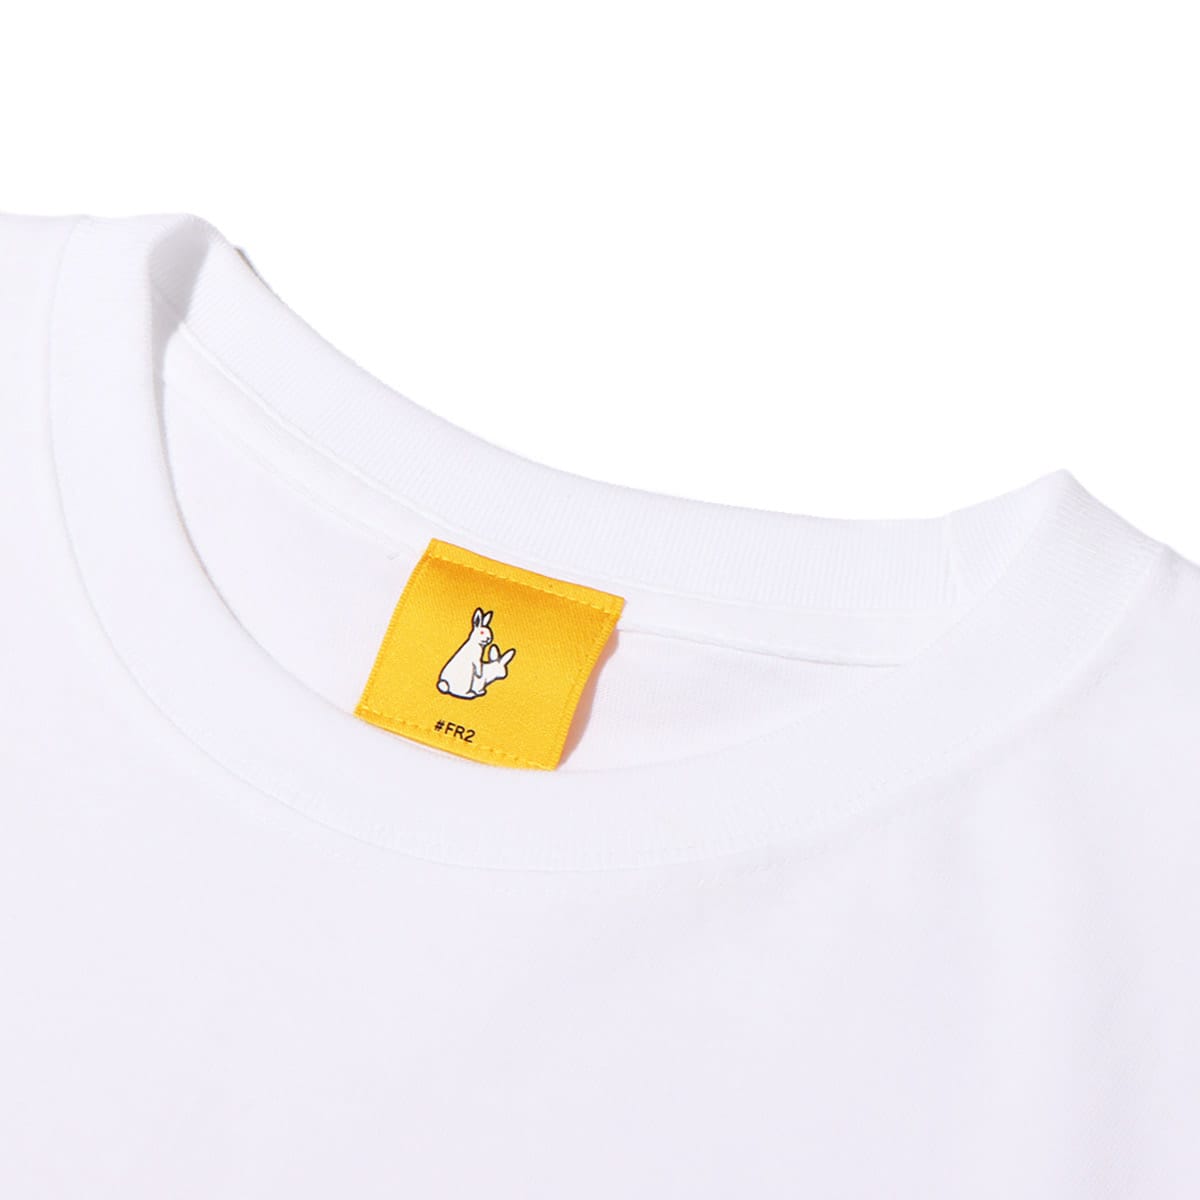 510562● FR2 ラメ Tシャツ M エフアールツー ロゴ ホワイト